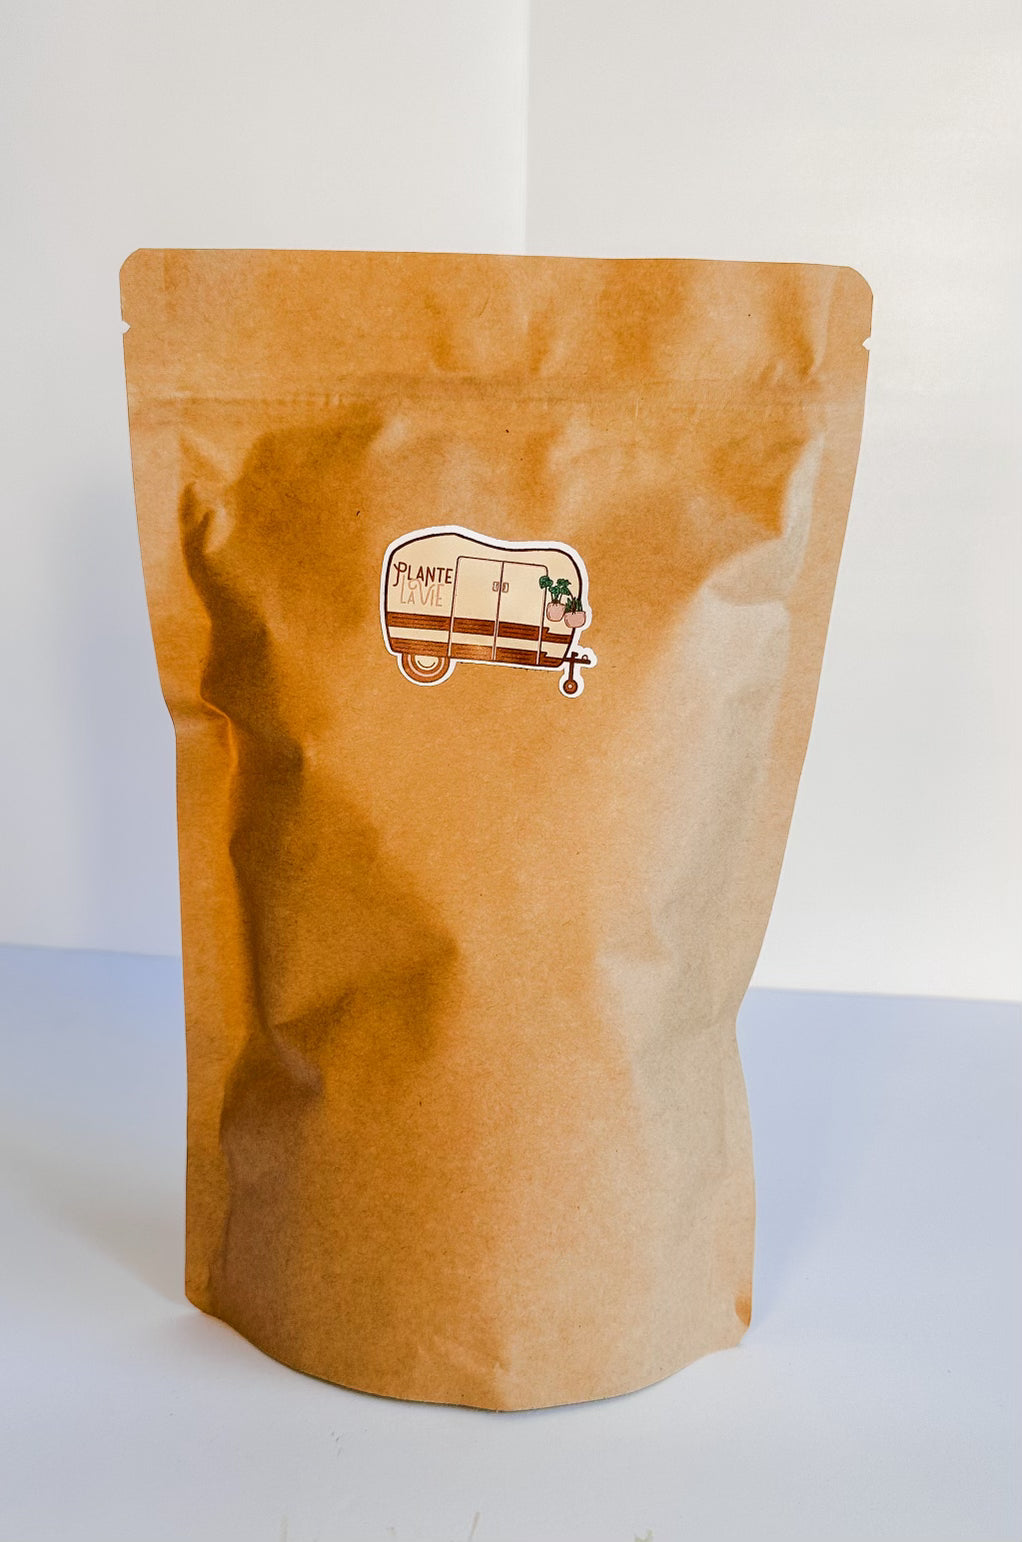 Happy Soil Mix Bag (16 oz.) - Premium Coco Noir, Perlite, Biochar, Charcoal & Gypsum blend for Houseplants